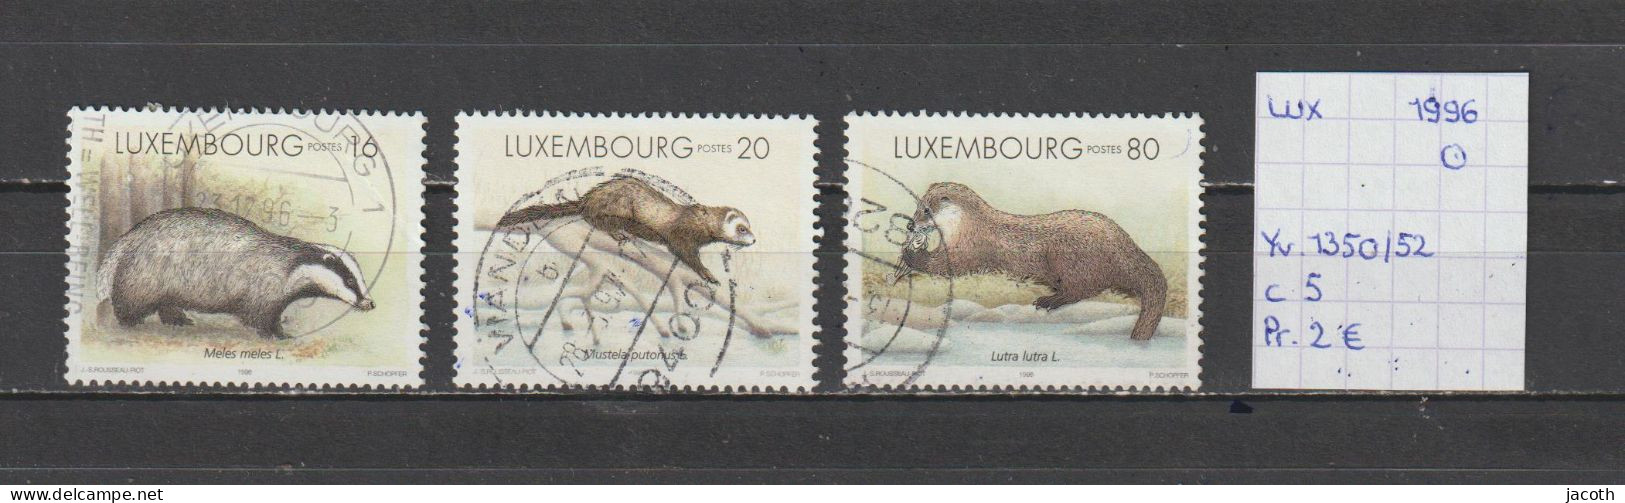 (TJ) Luxembourg 1996 - YT 1350/52 (gest./obl./used) - Oblitérés